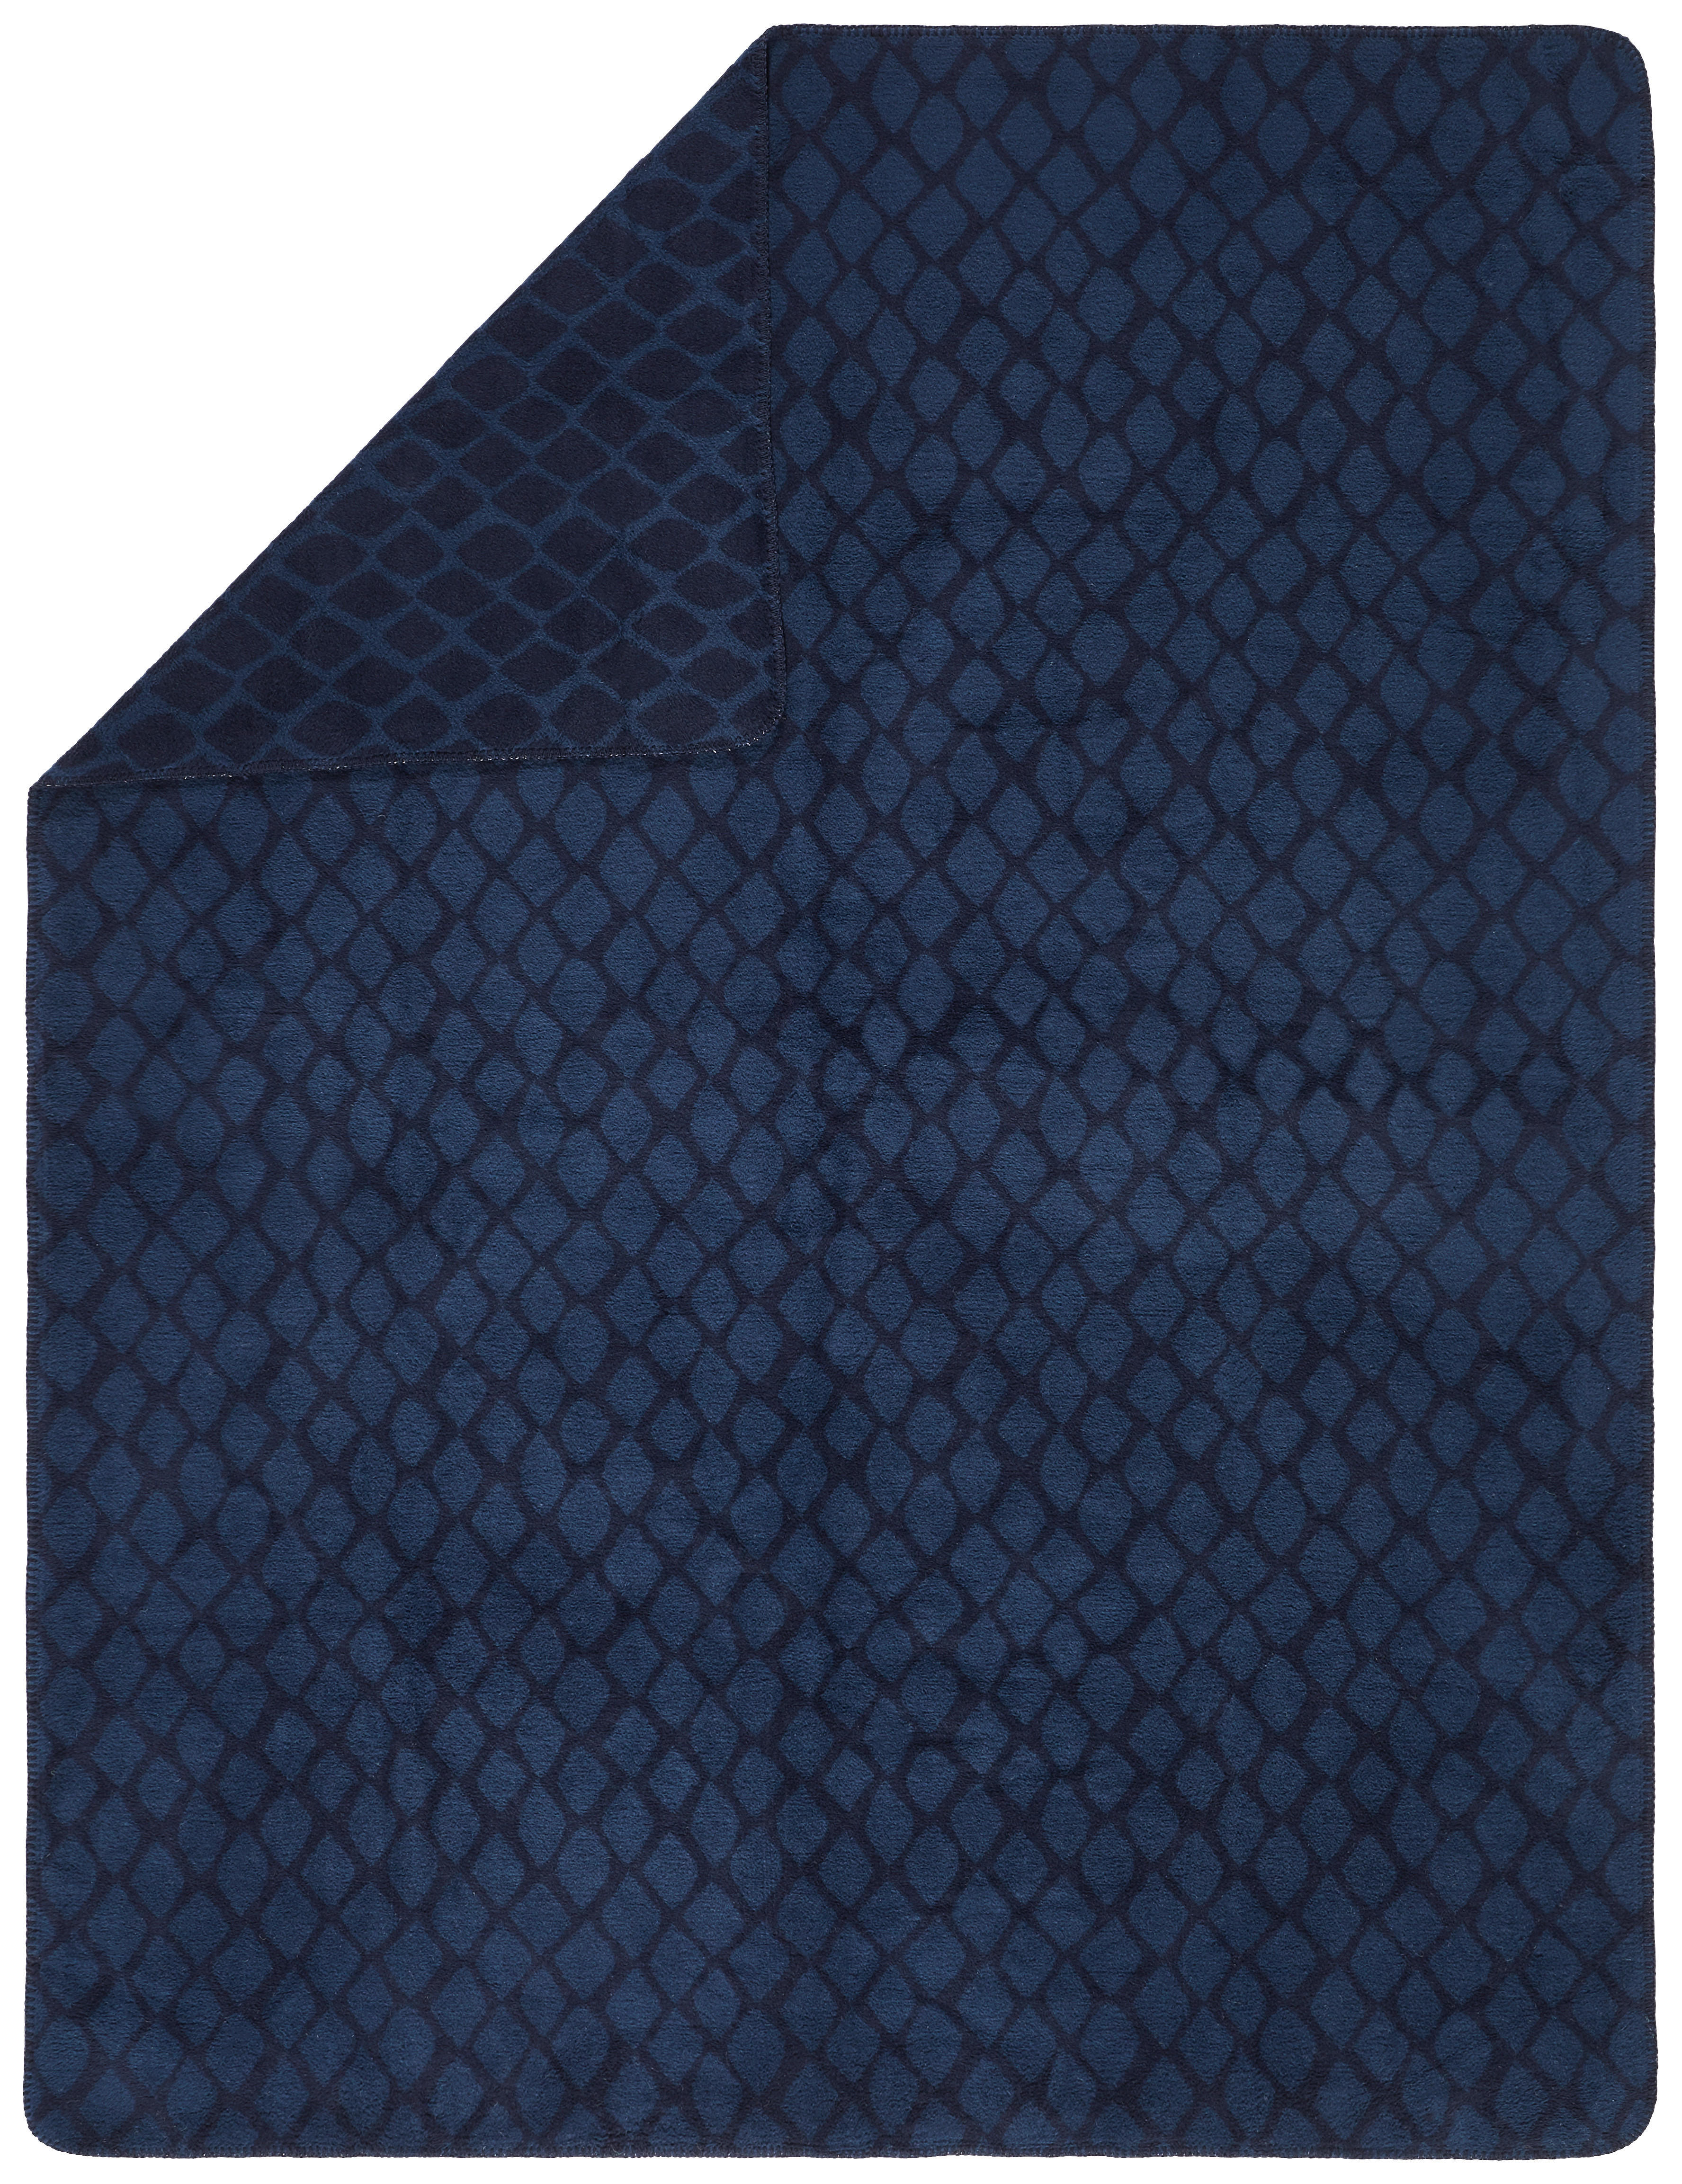 PLÄD 150/200 cm  - blå, Basics, textil (150/200cm) - Dieter Knoll